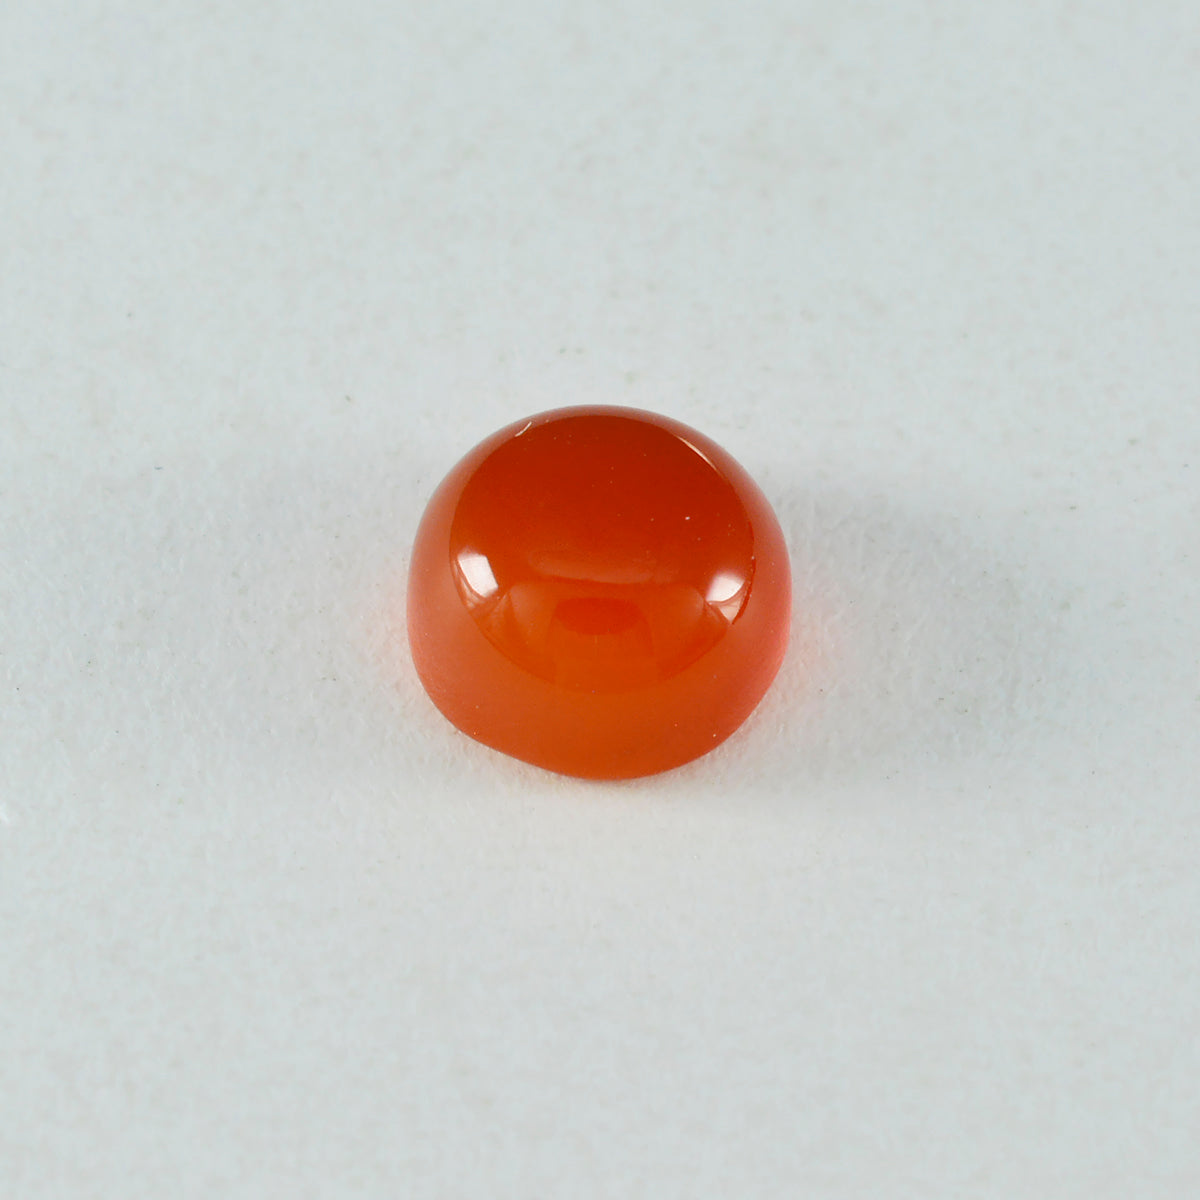 riyogems 1 pieza cabujón de ónix rojo 15x15 mm forma redonda gemas de calidad